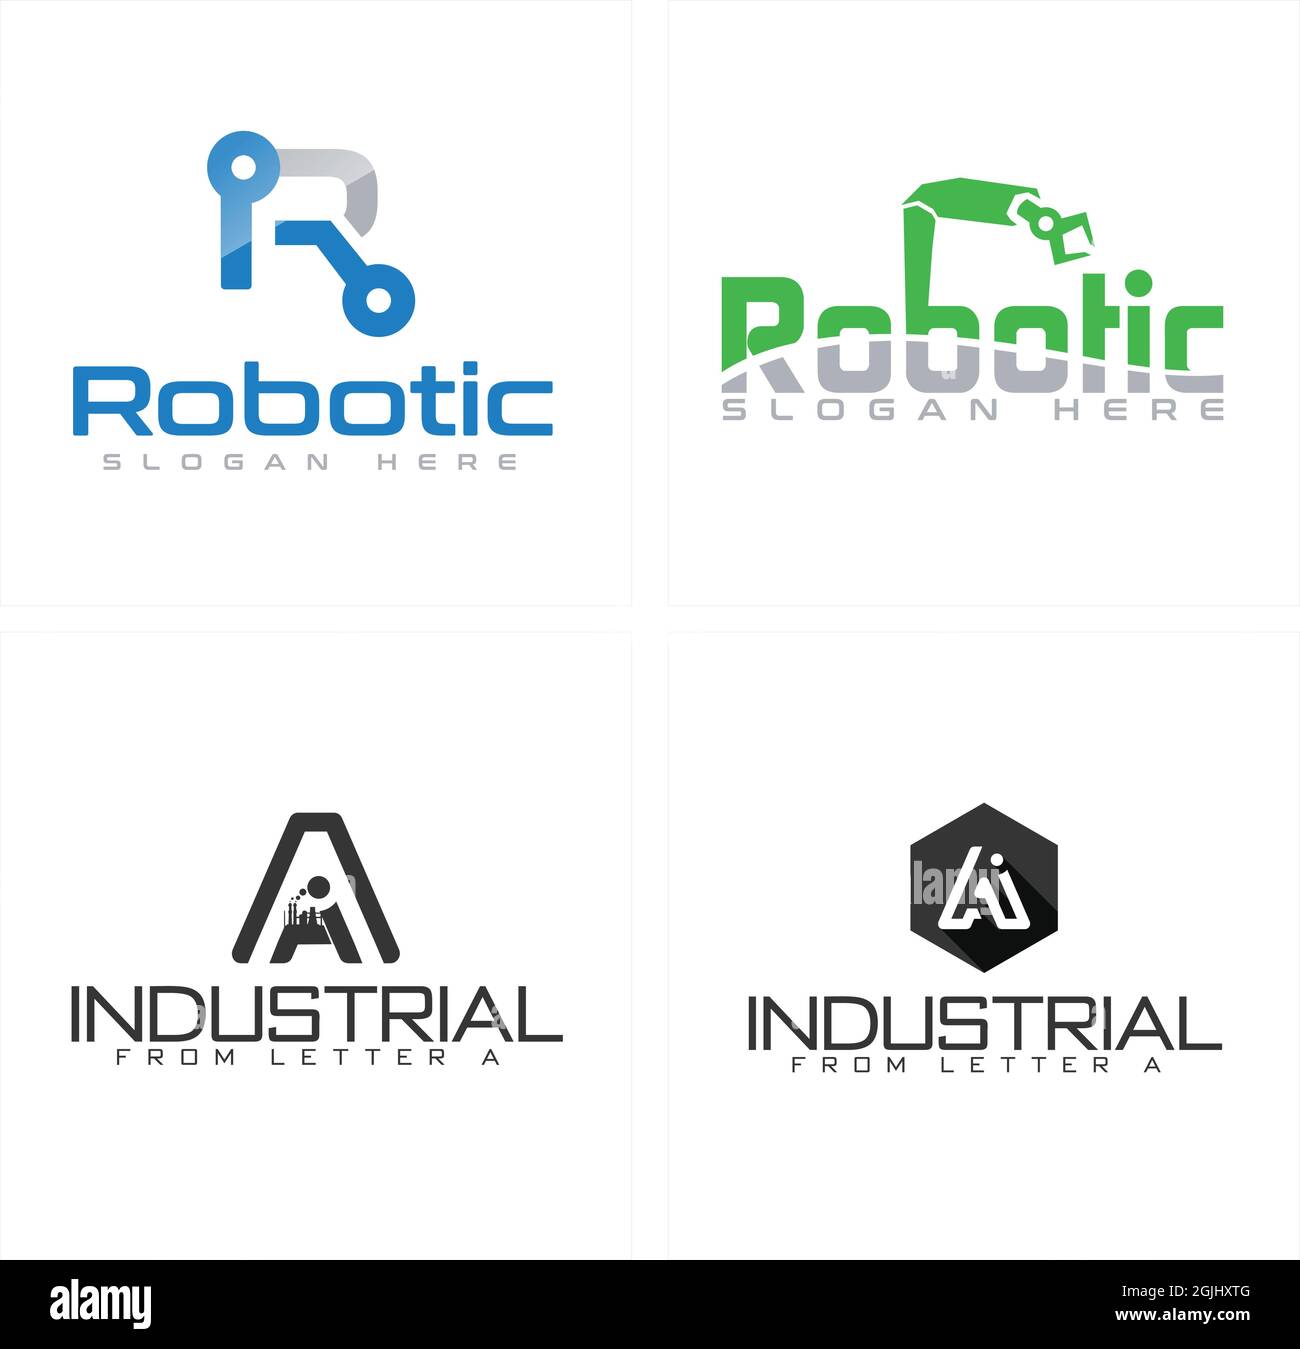 Industrial engineering robotic logo design Stock Vector